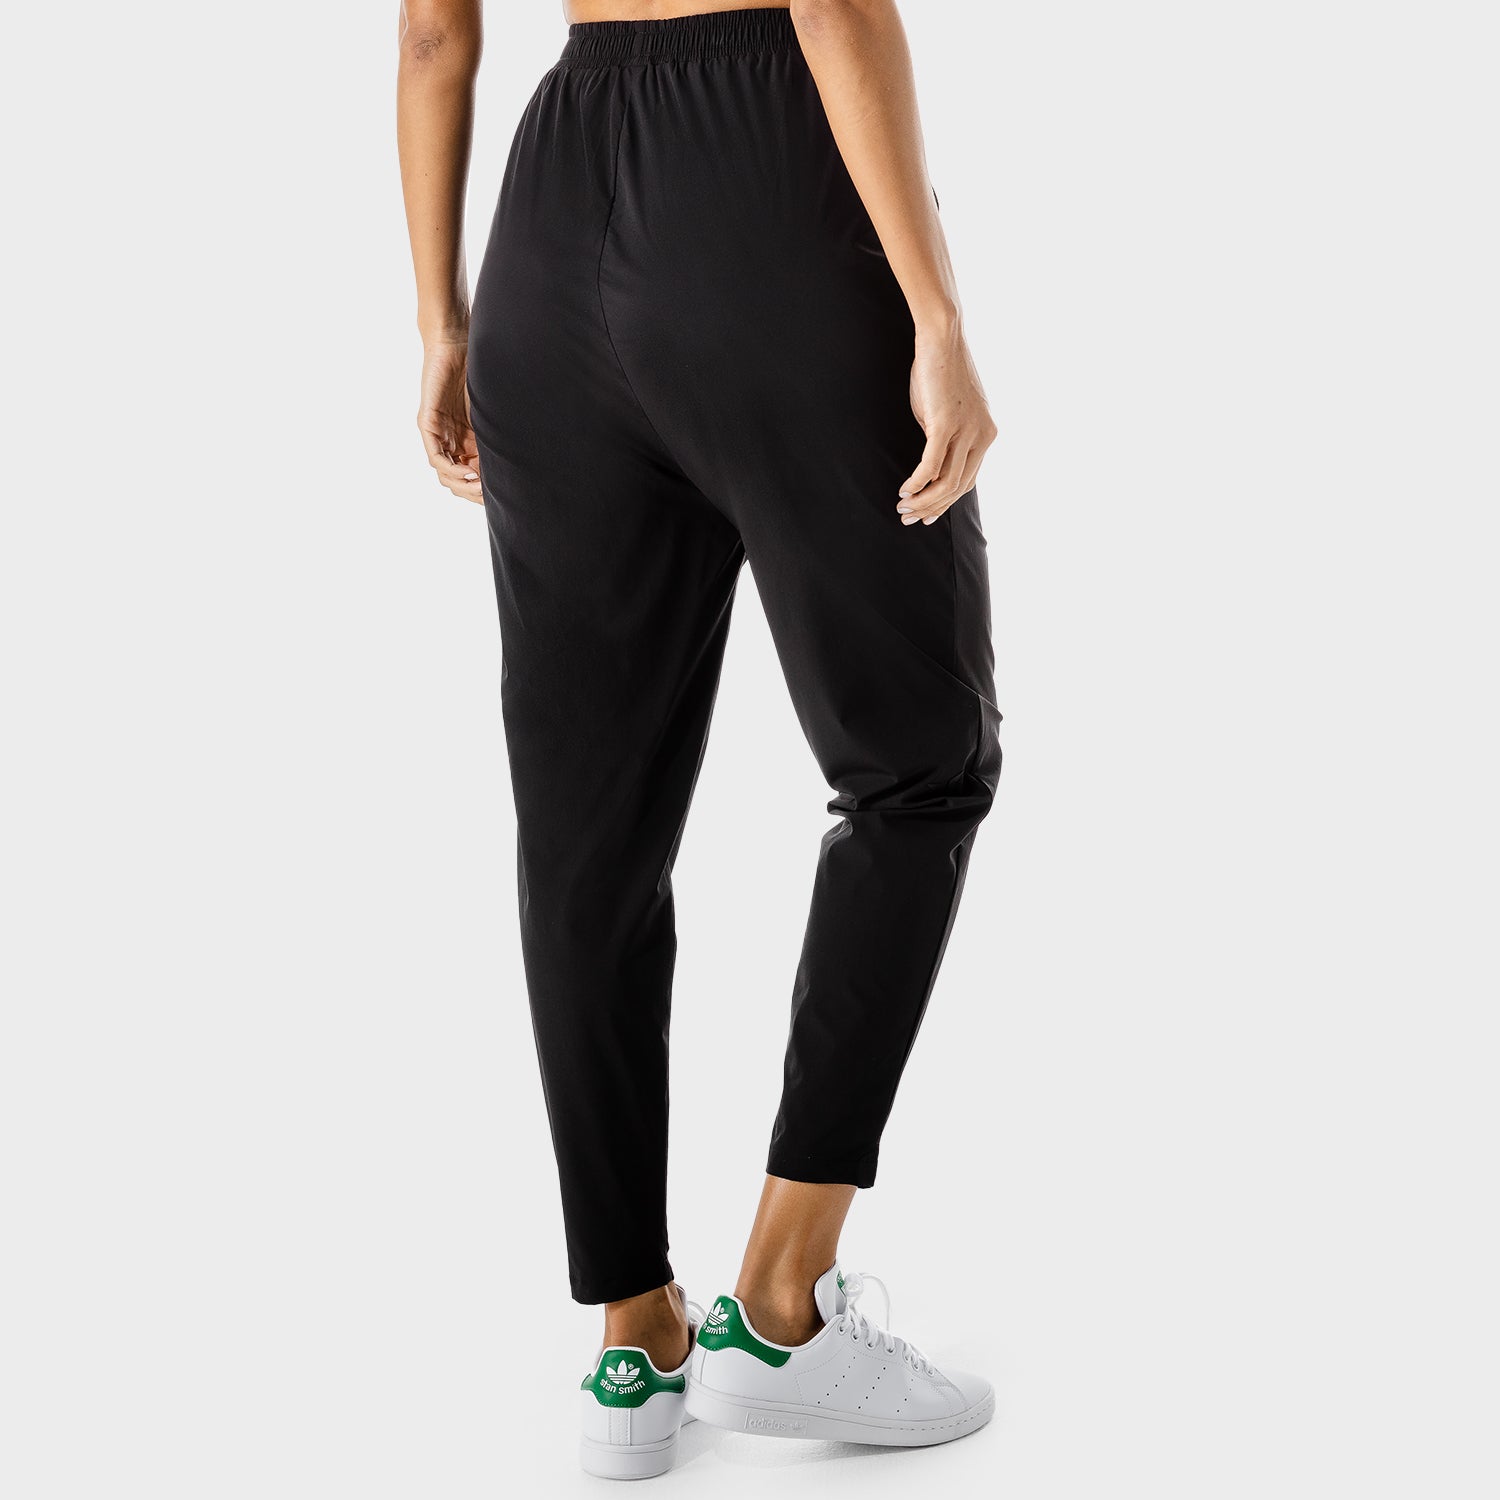 US, Women's Fitness - Wrap Pants - Black, Workout Pants Women